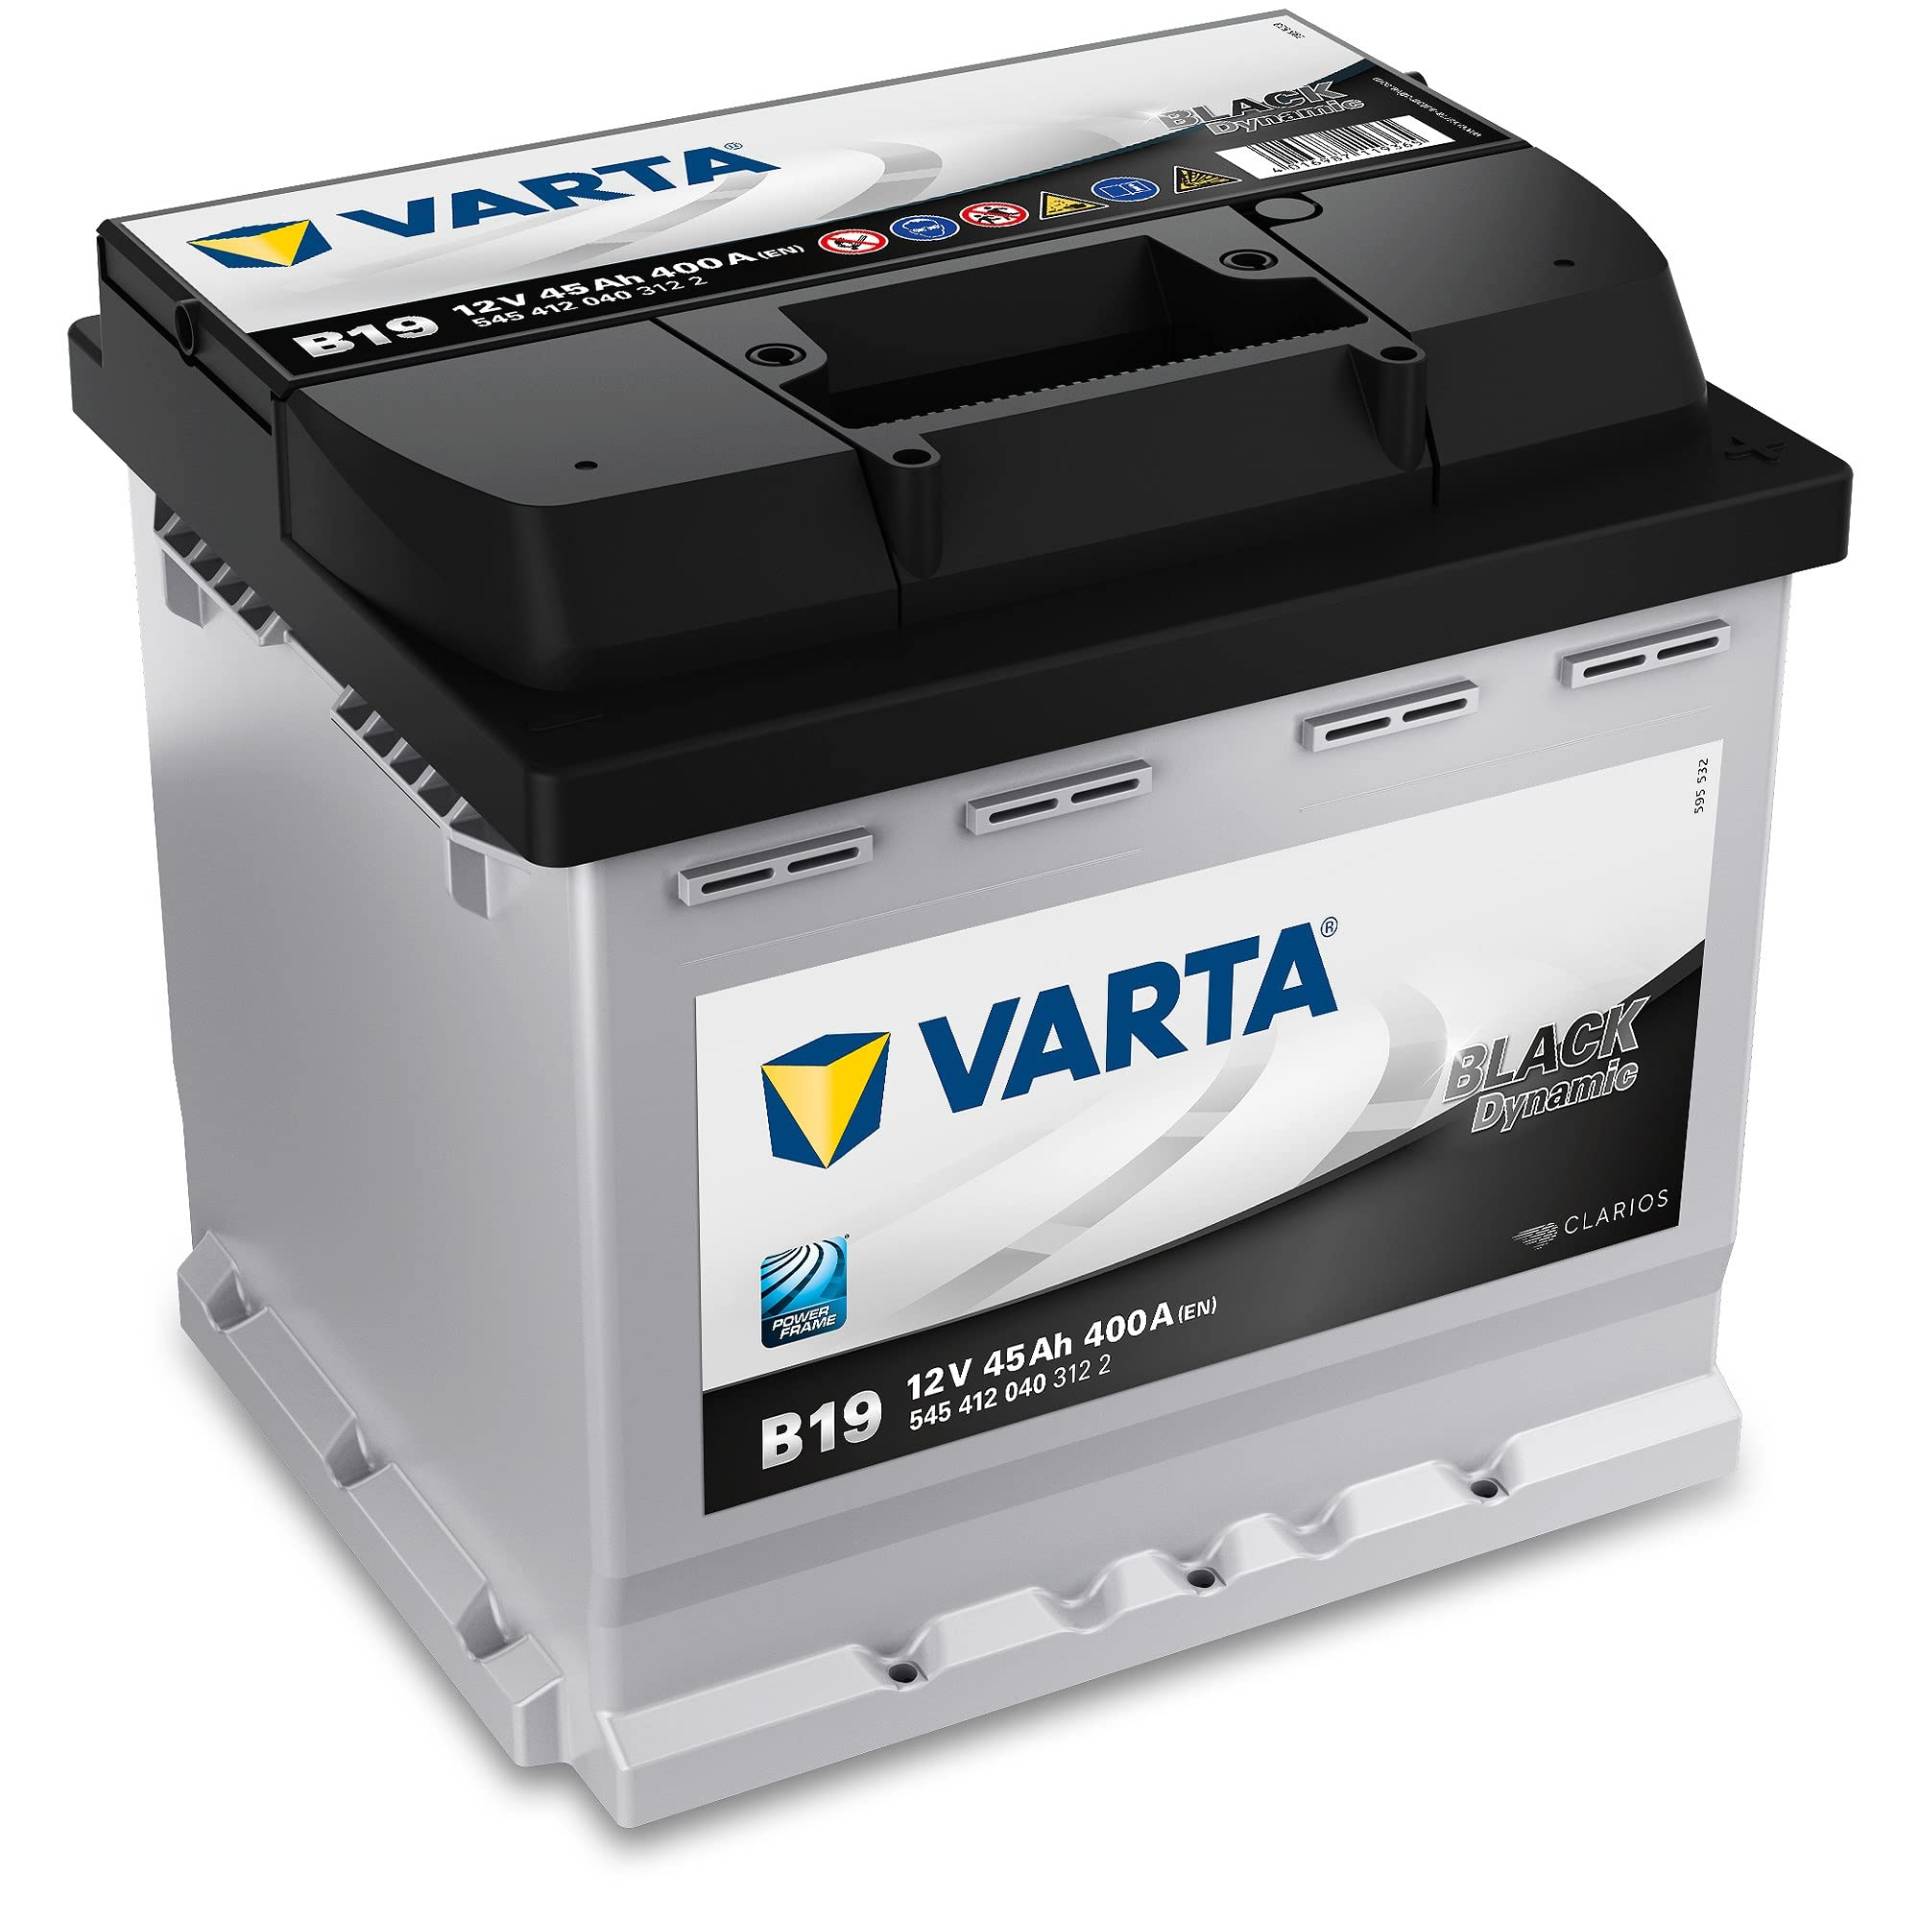 Varta 5454120403122 Anlasser Batterie, 12V, 45Ah, 400A, 20.7cm x 17.5cm x 19cm, für PKW von Varta